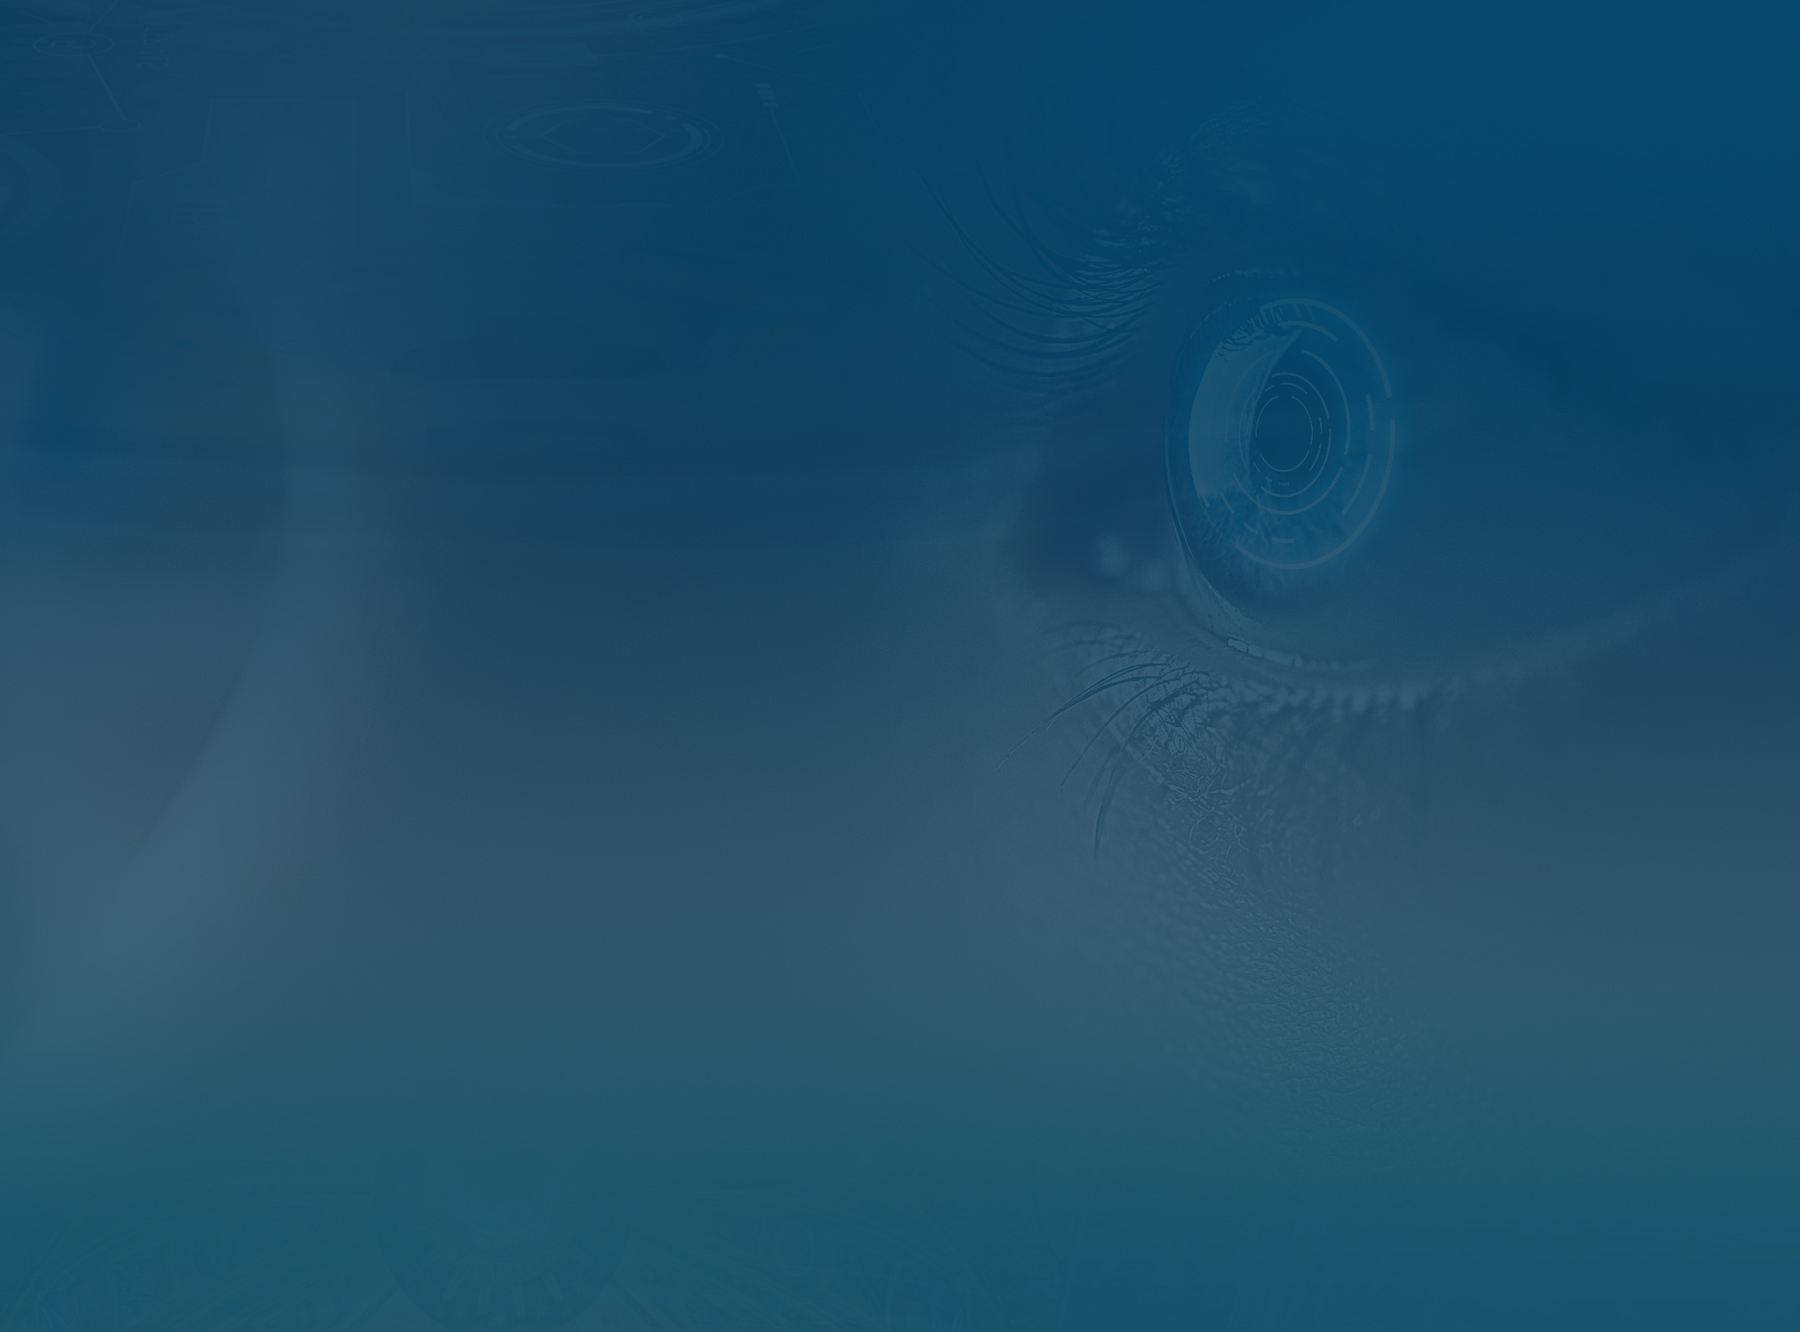 CEYEBER Develops First-Ever Intraocular Smart Lens: The Third Eye